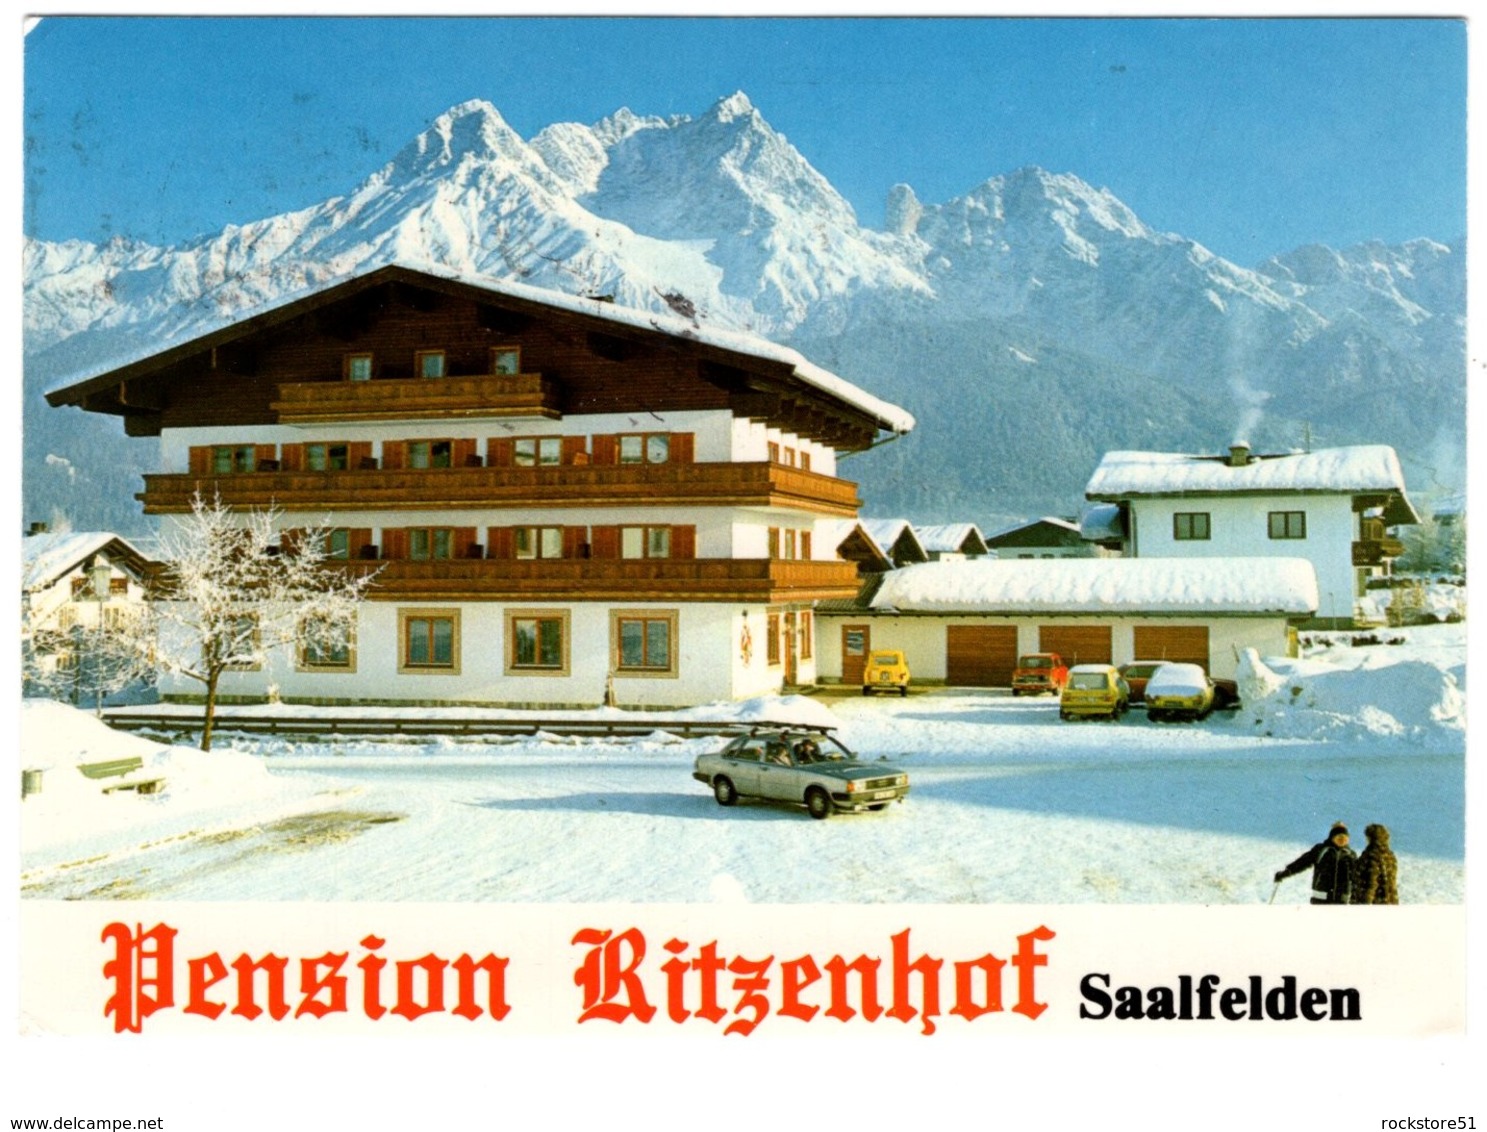 Pension Ritzenhof Saalfelden - Saalfelden